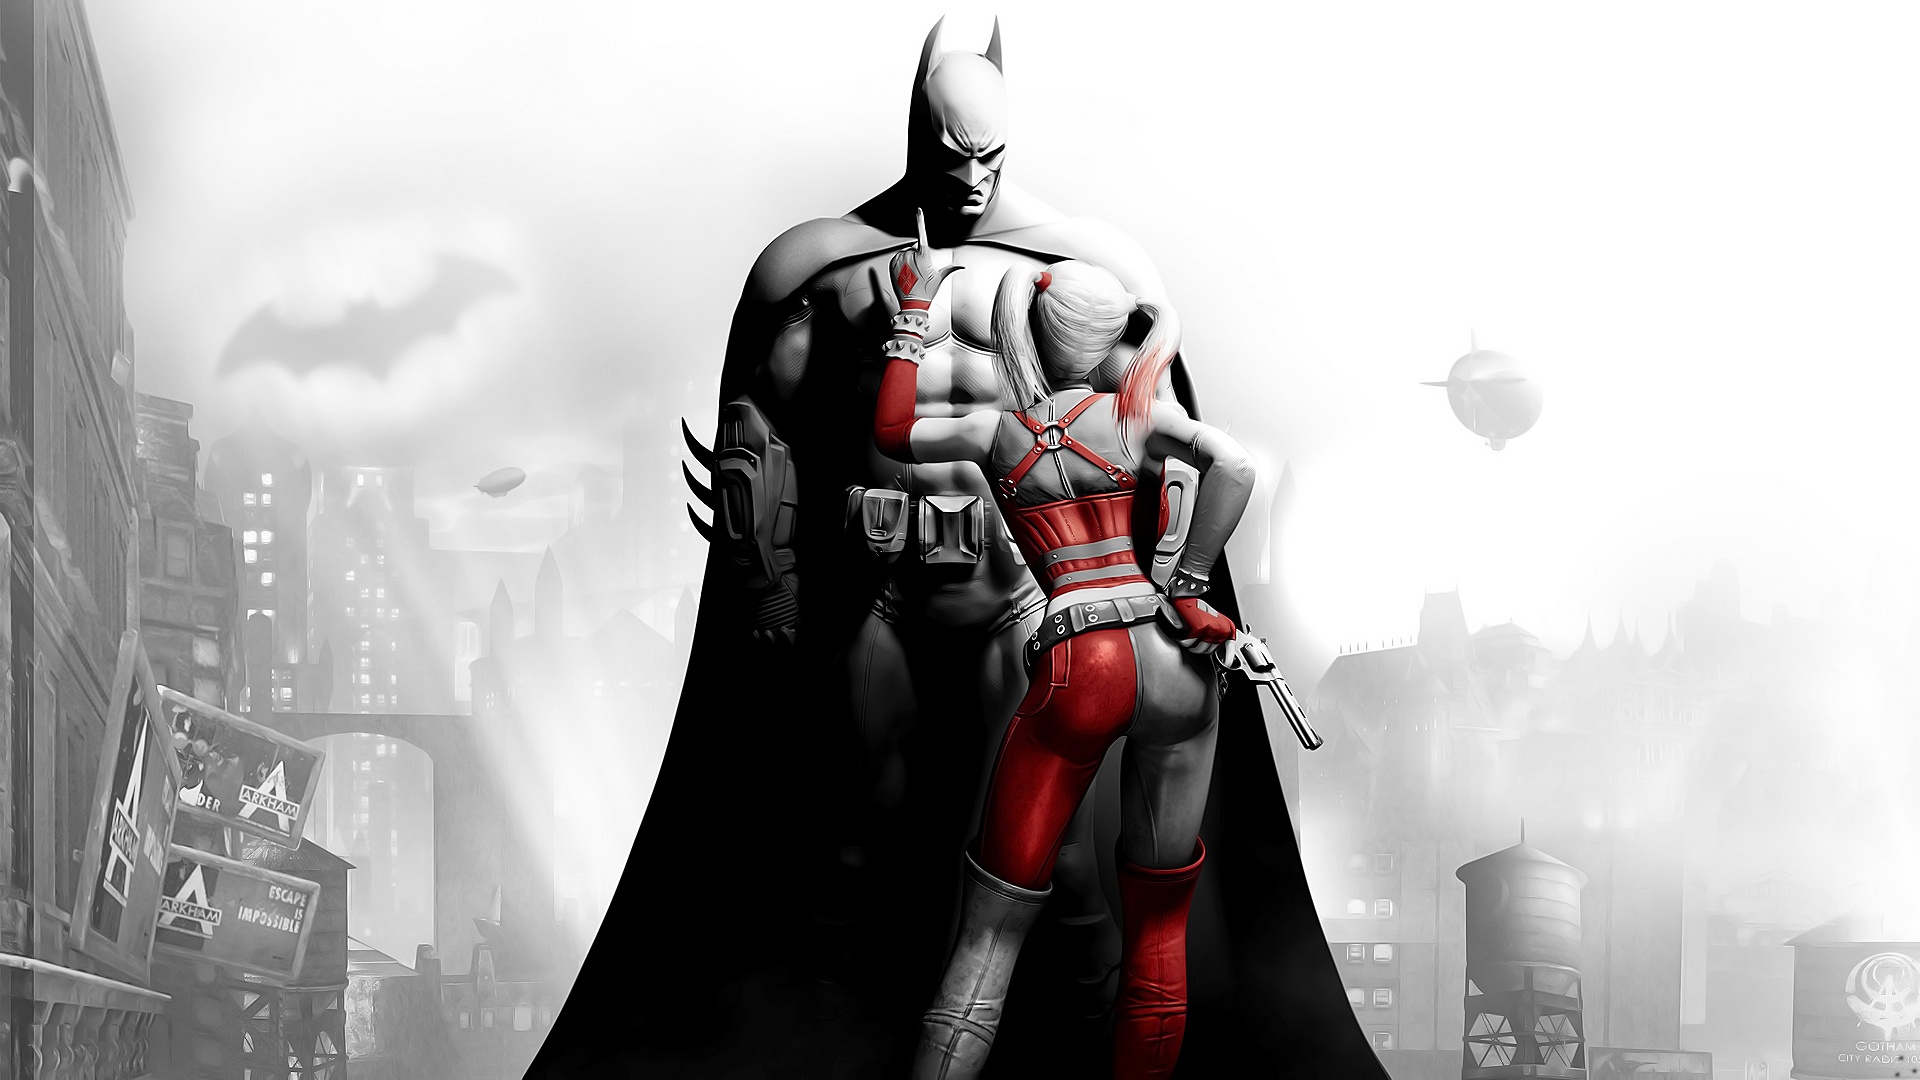 38+] Batman Harley Quinn Wallpaper - WallpaperSafari